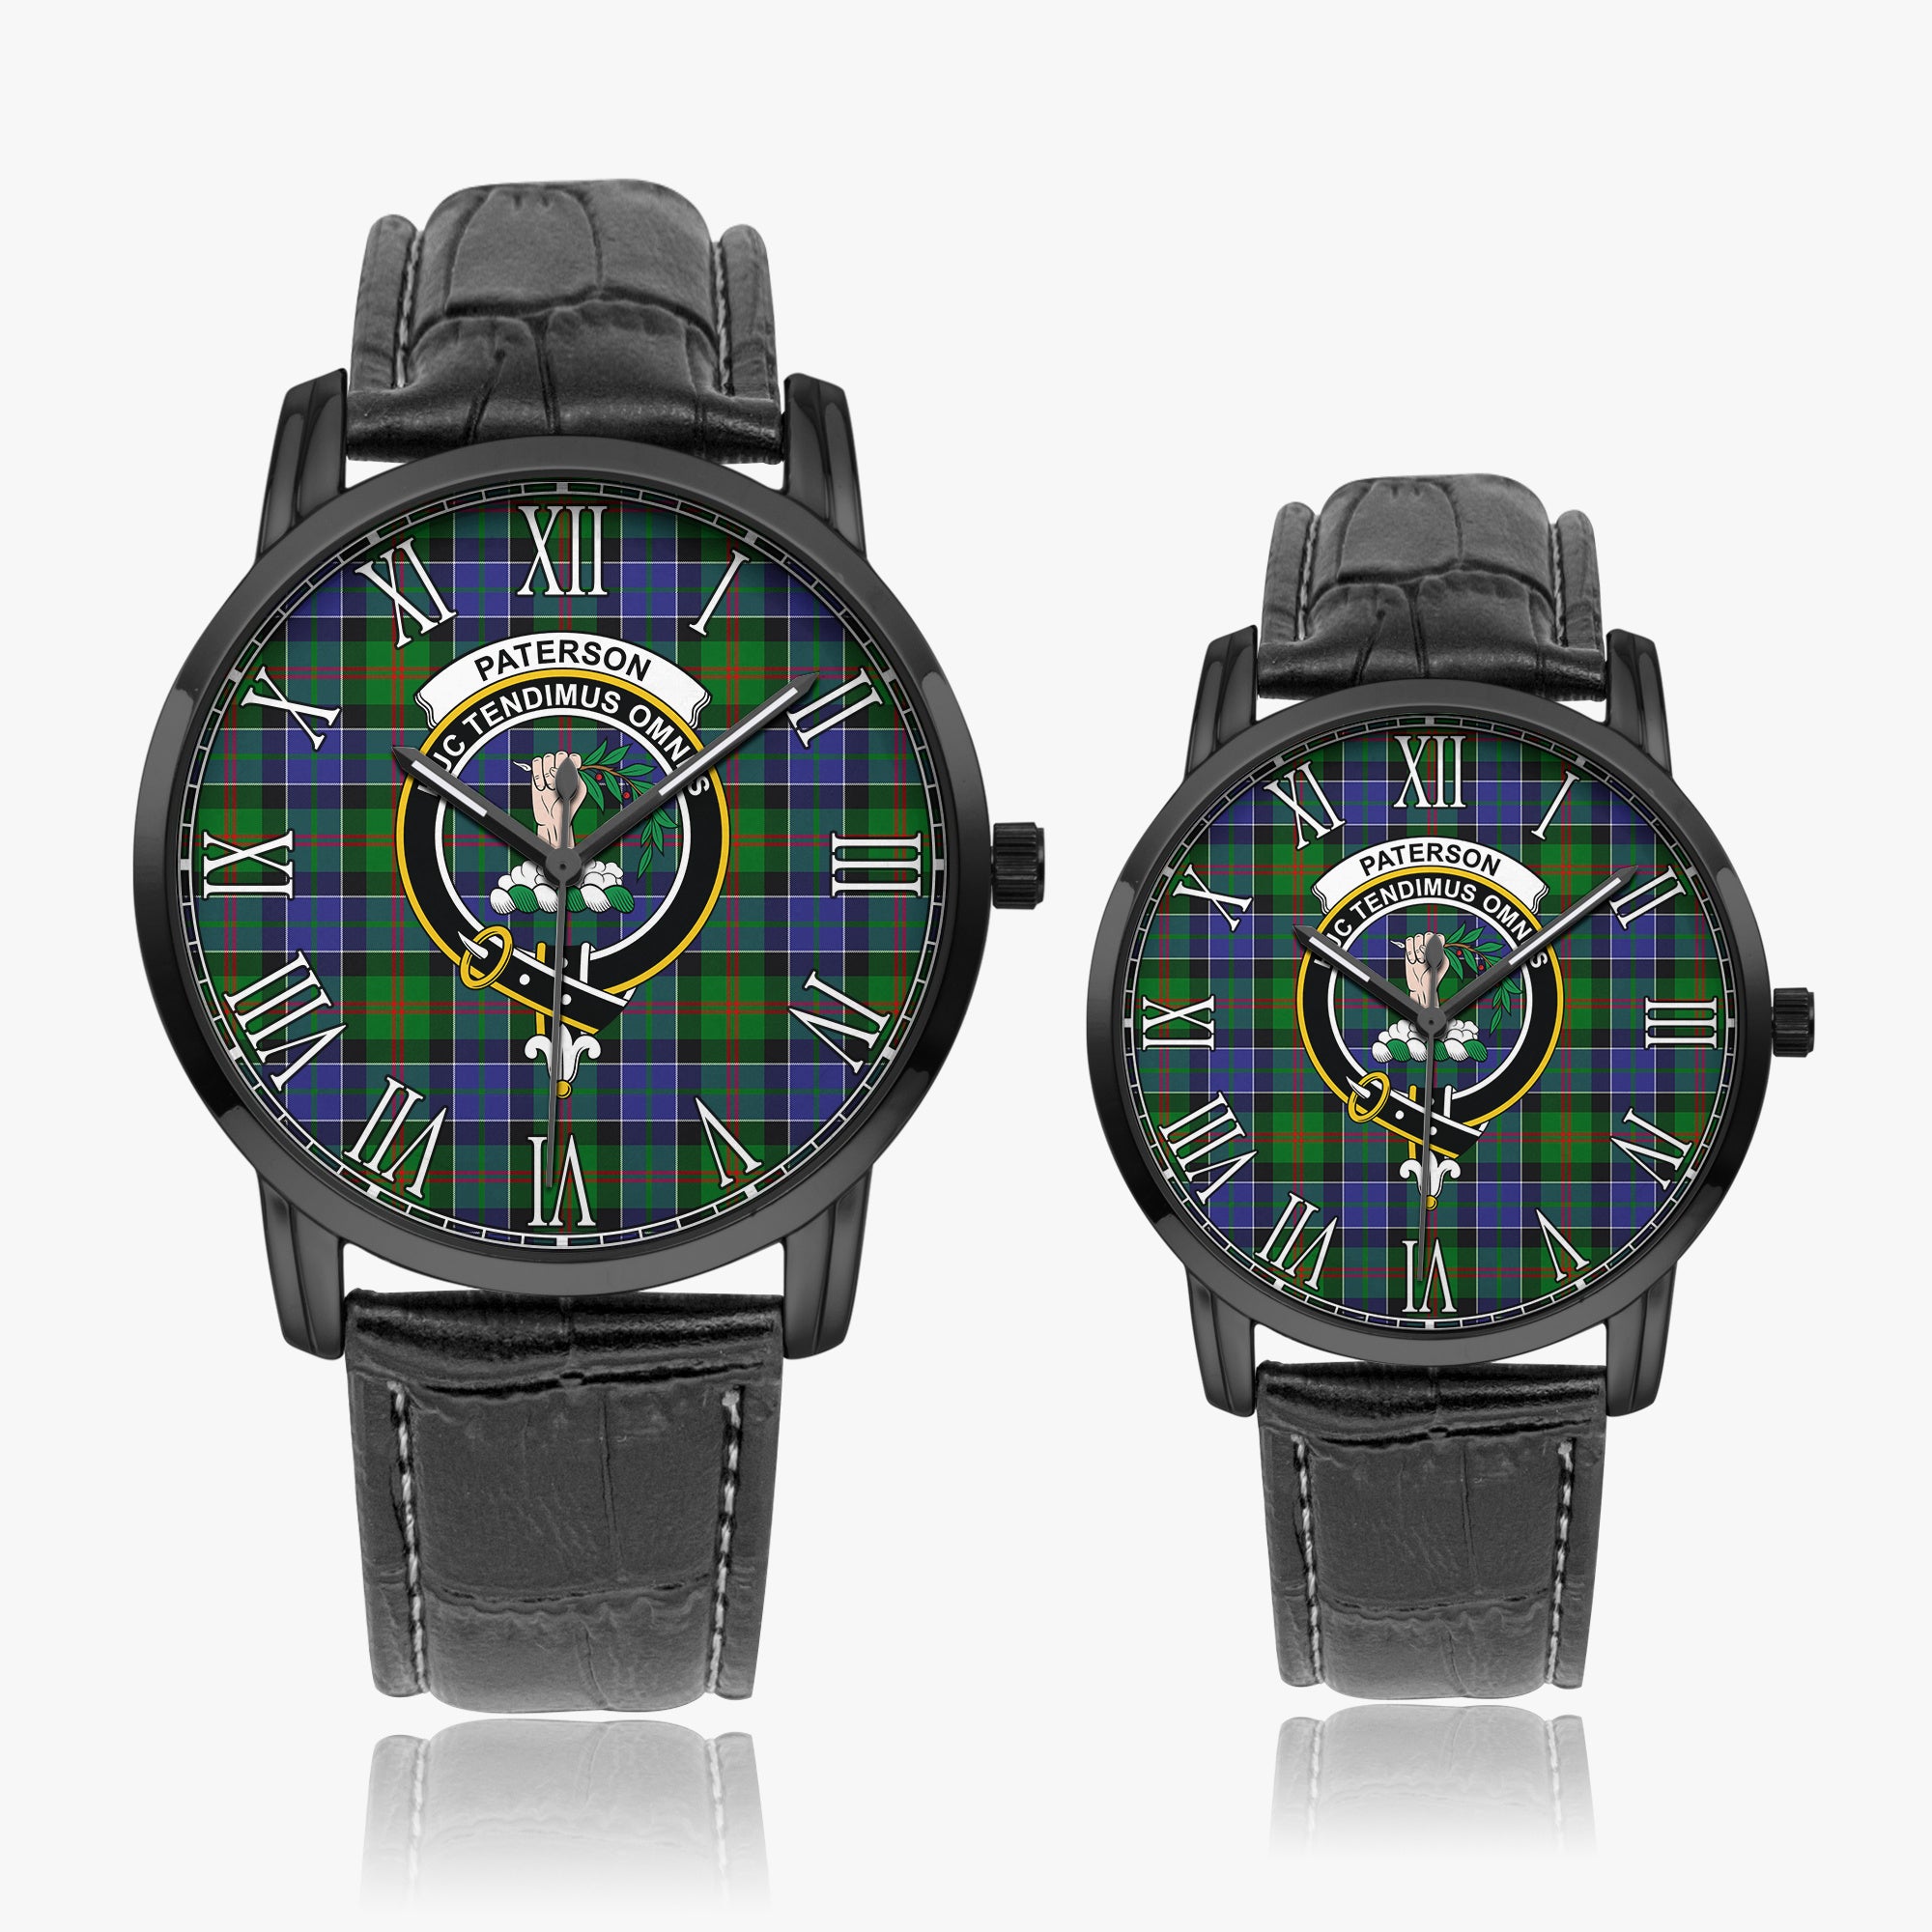 paterson-family-crest-quartz-watch-with-leather-strap-tartan-instafamous-quartz-leather-strap-watch